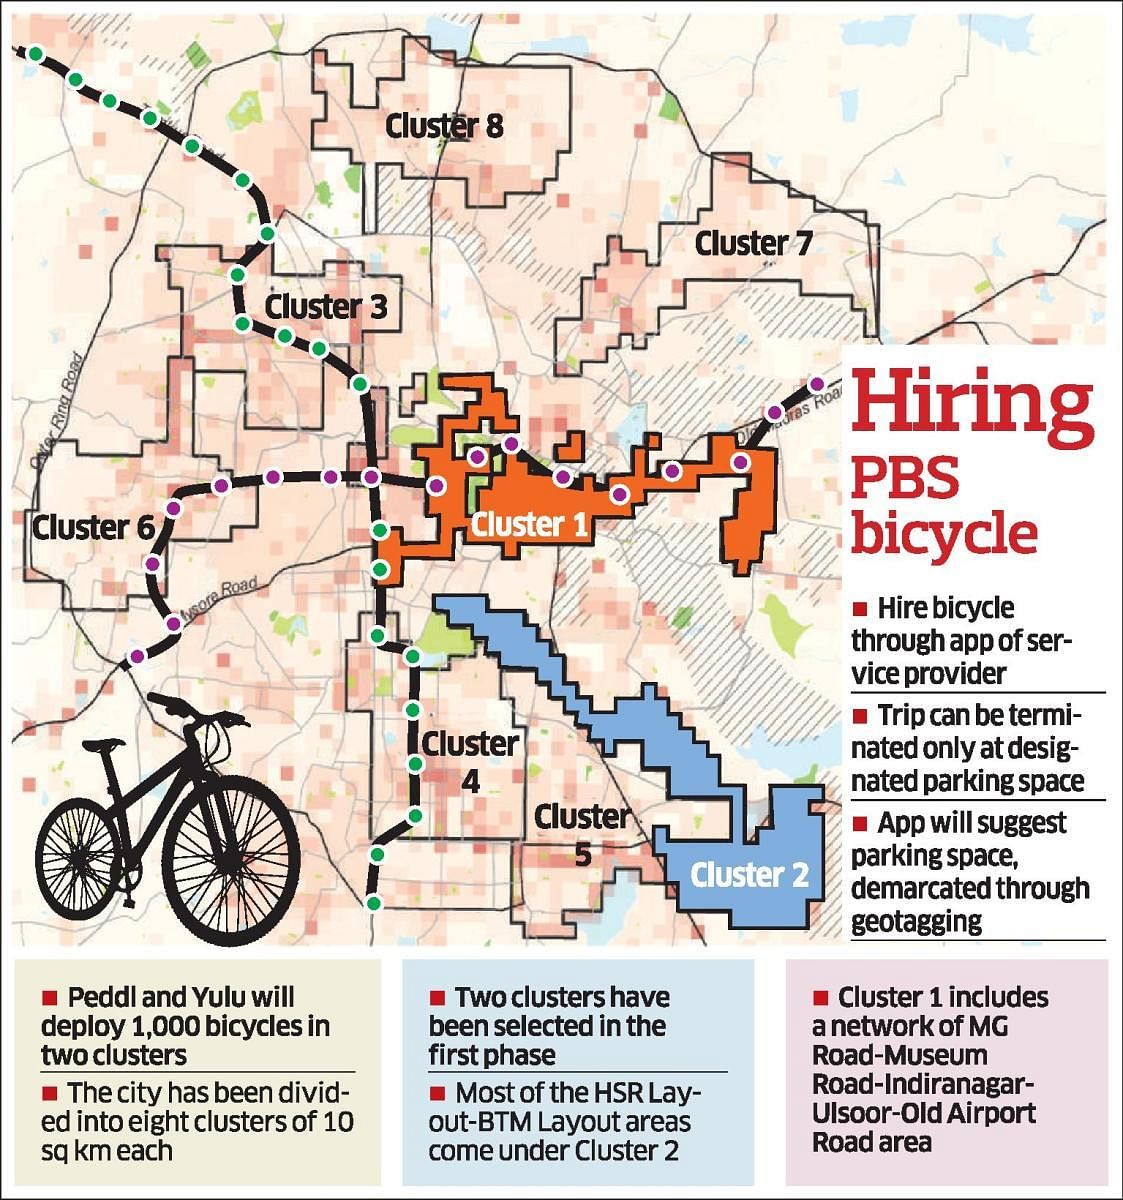 Bicycle sharing system may take off next week